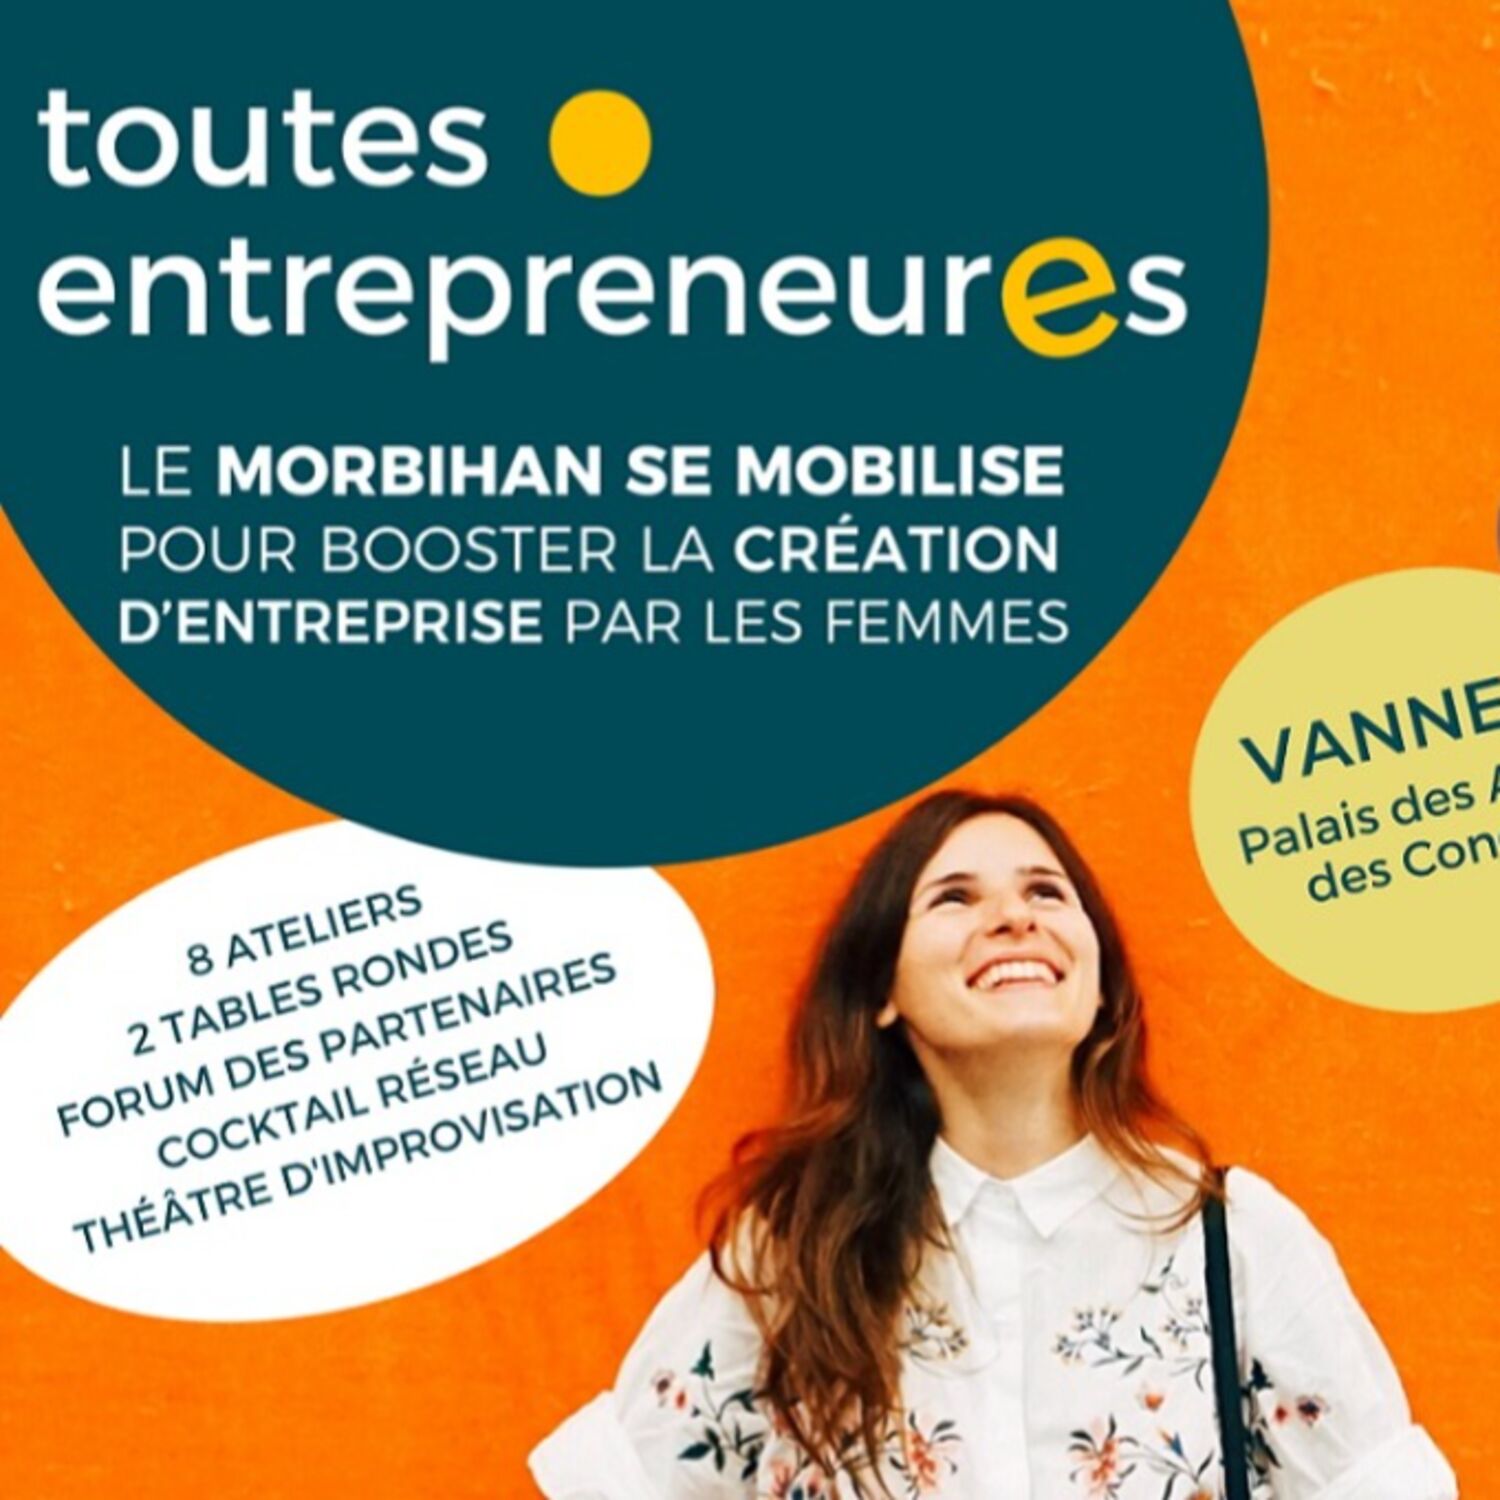 Le Morbihan booste l'entrepreneuriat au féminin, le 8 mars à Vannes !